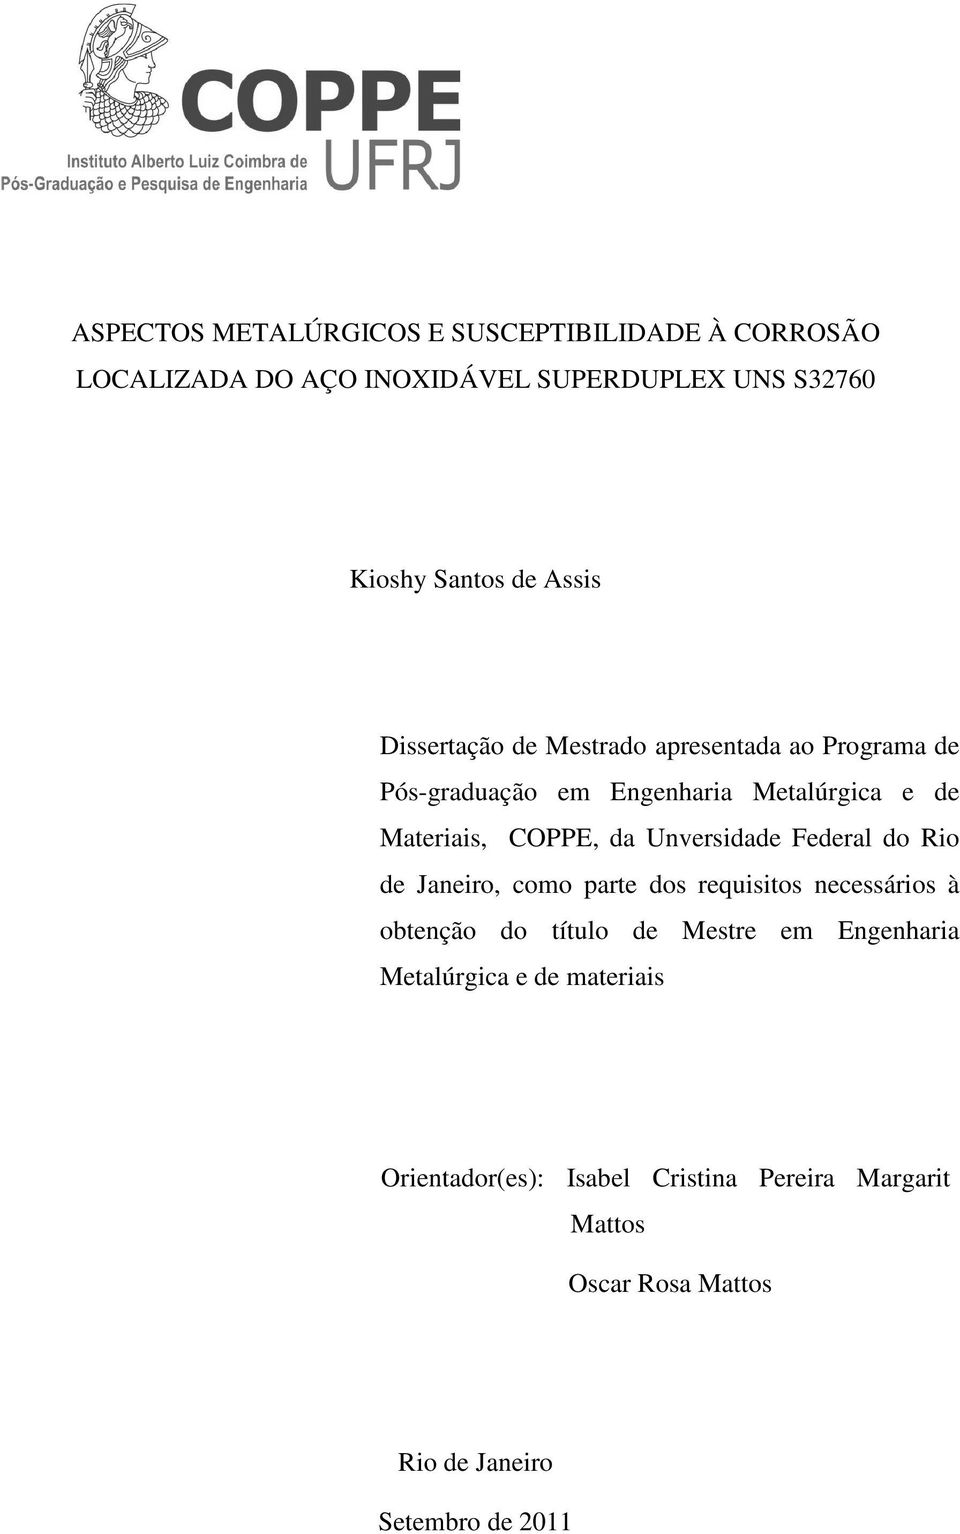 Unversidade Federal do Rio de Janeiro, como parte dos requisitos necessários à obtenção do título de Mestre em Engenharia